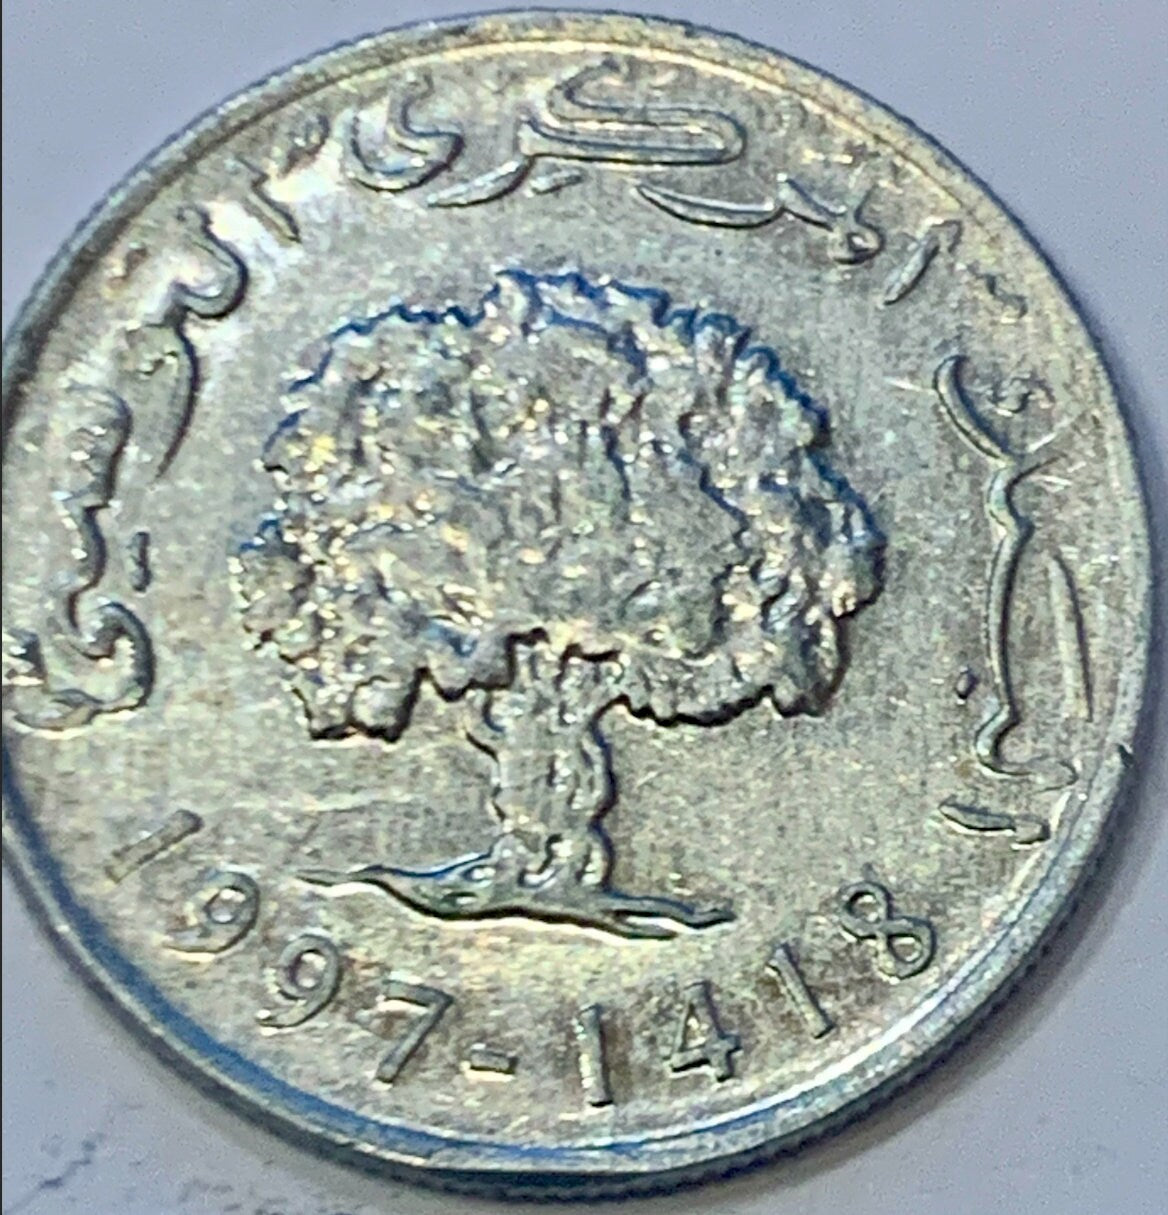 1997 Tunisia 5 Millimes Aluminium Coin (2 Pieces)